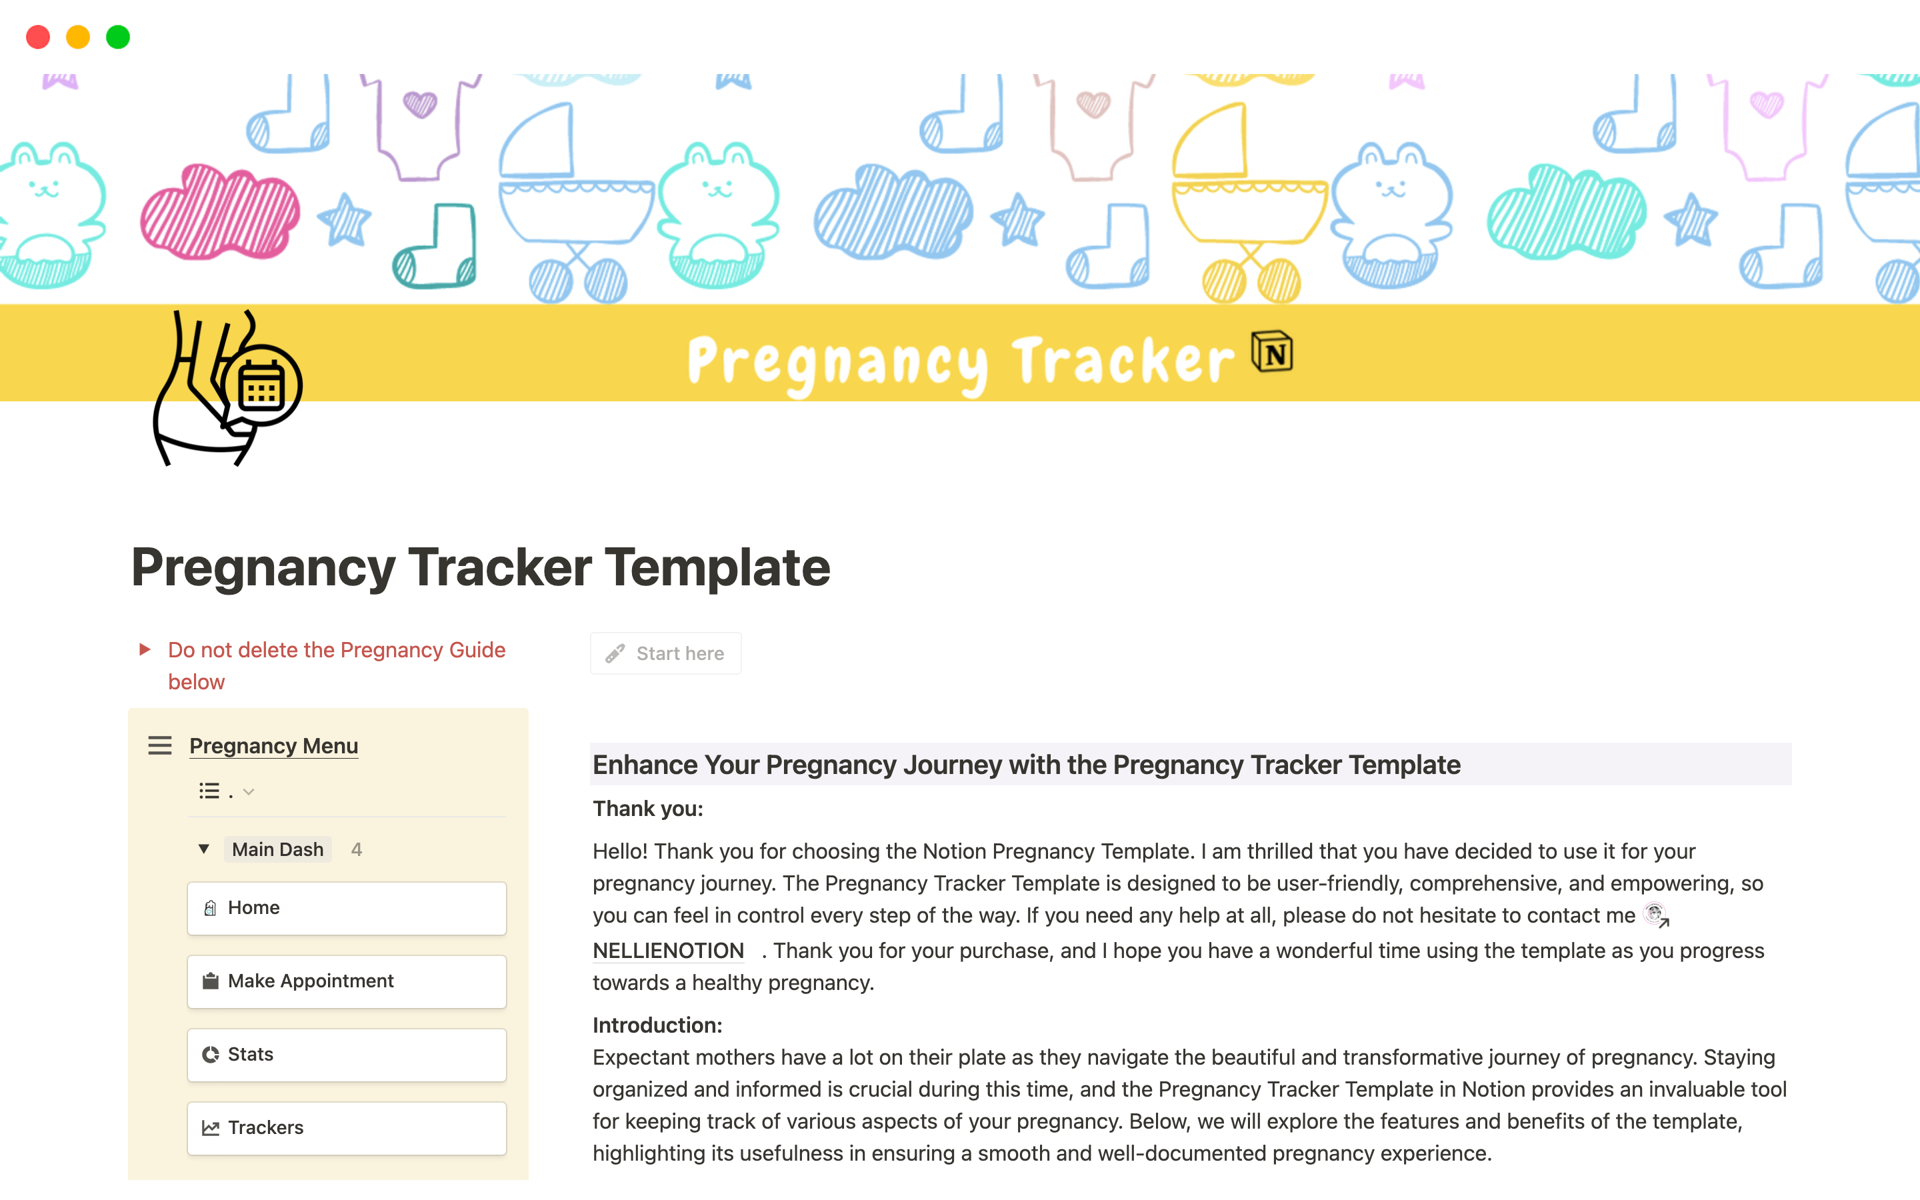 Vista previa de una plantilla para Pregnancy Tracker Template